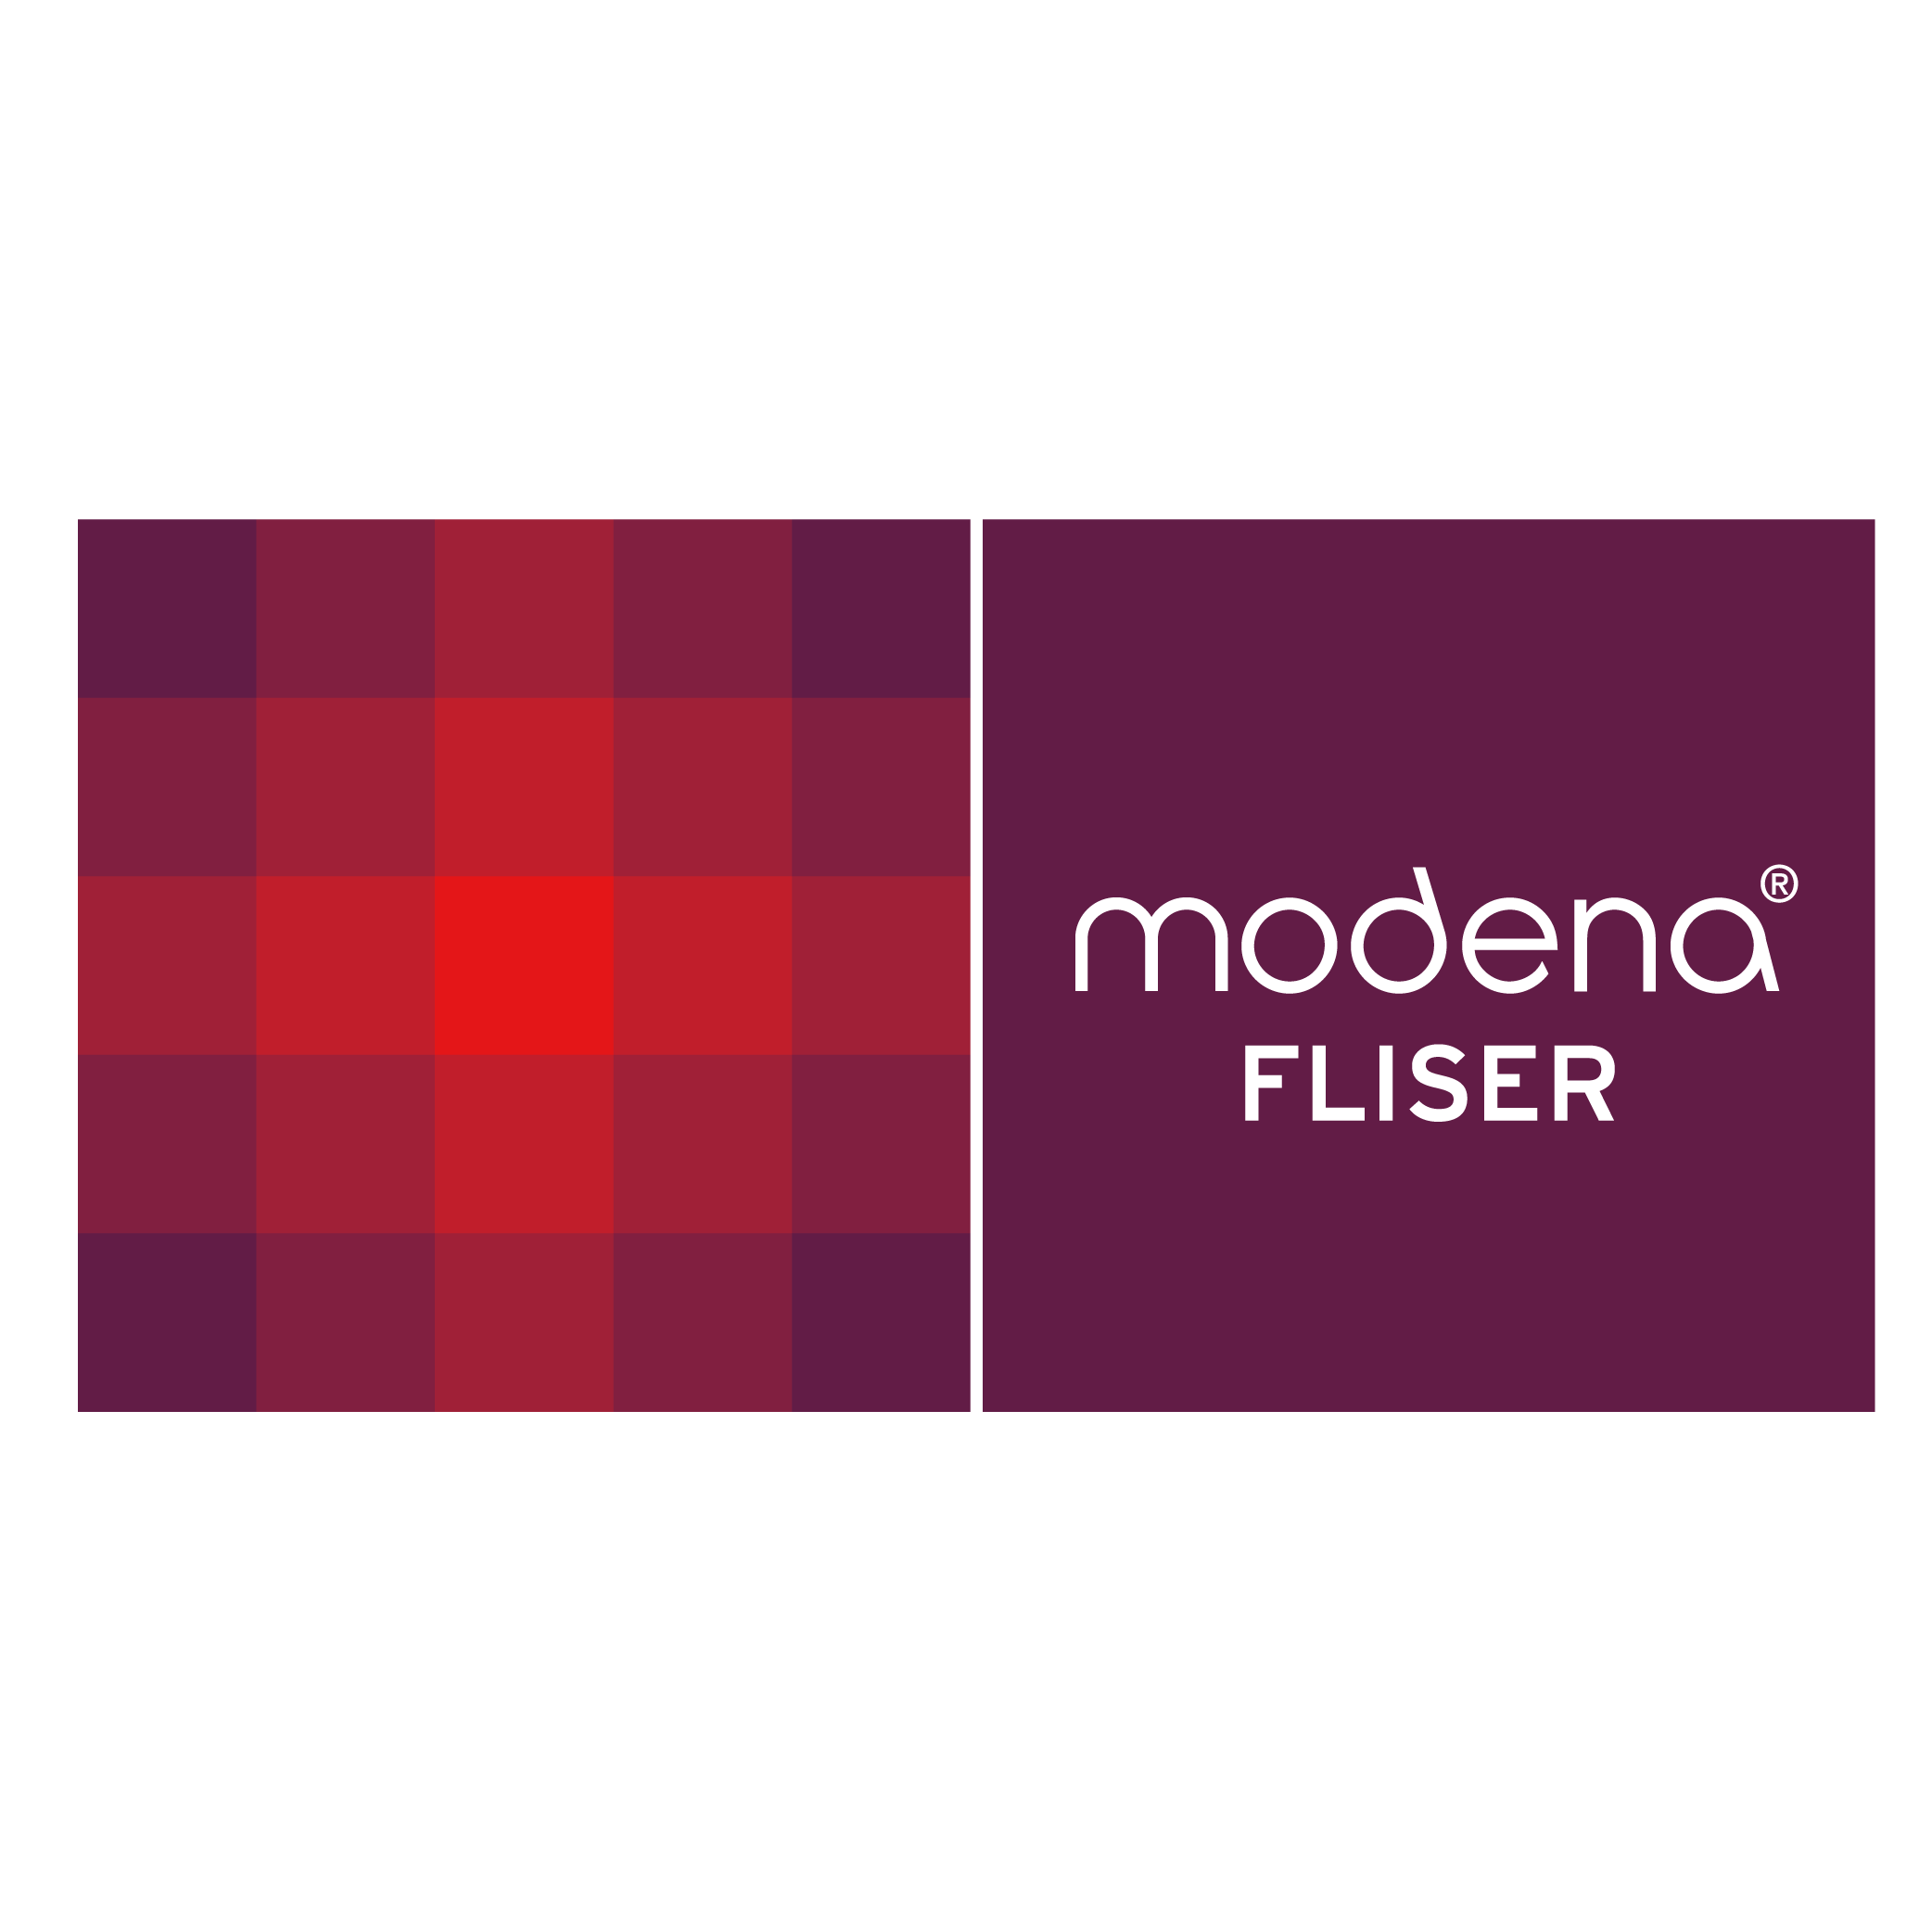 Modena Fliser